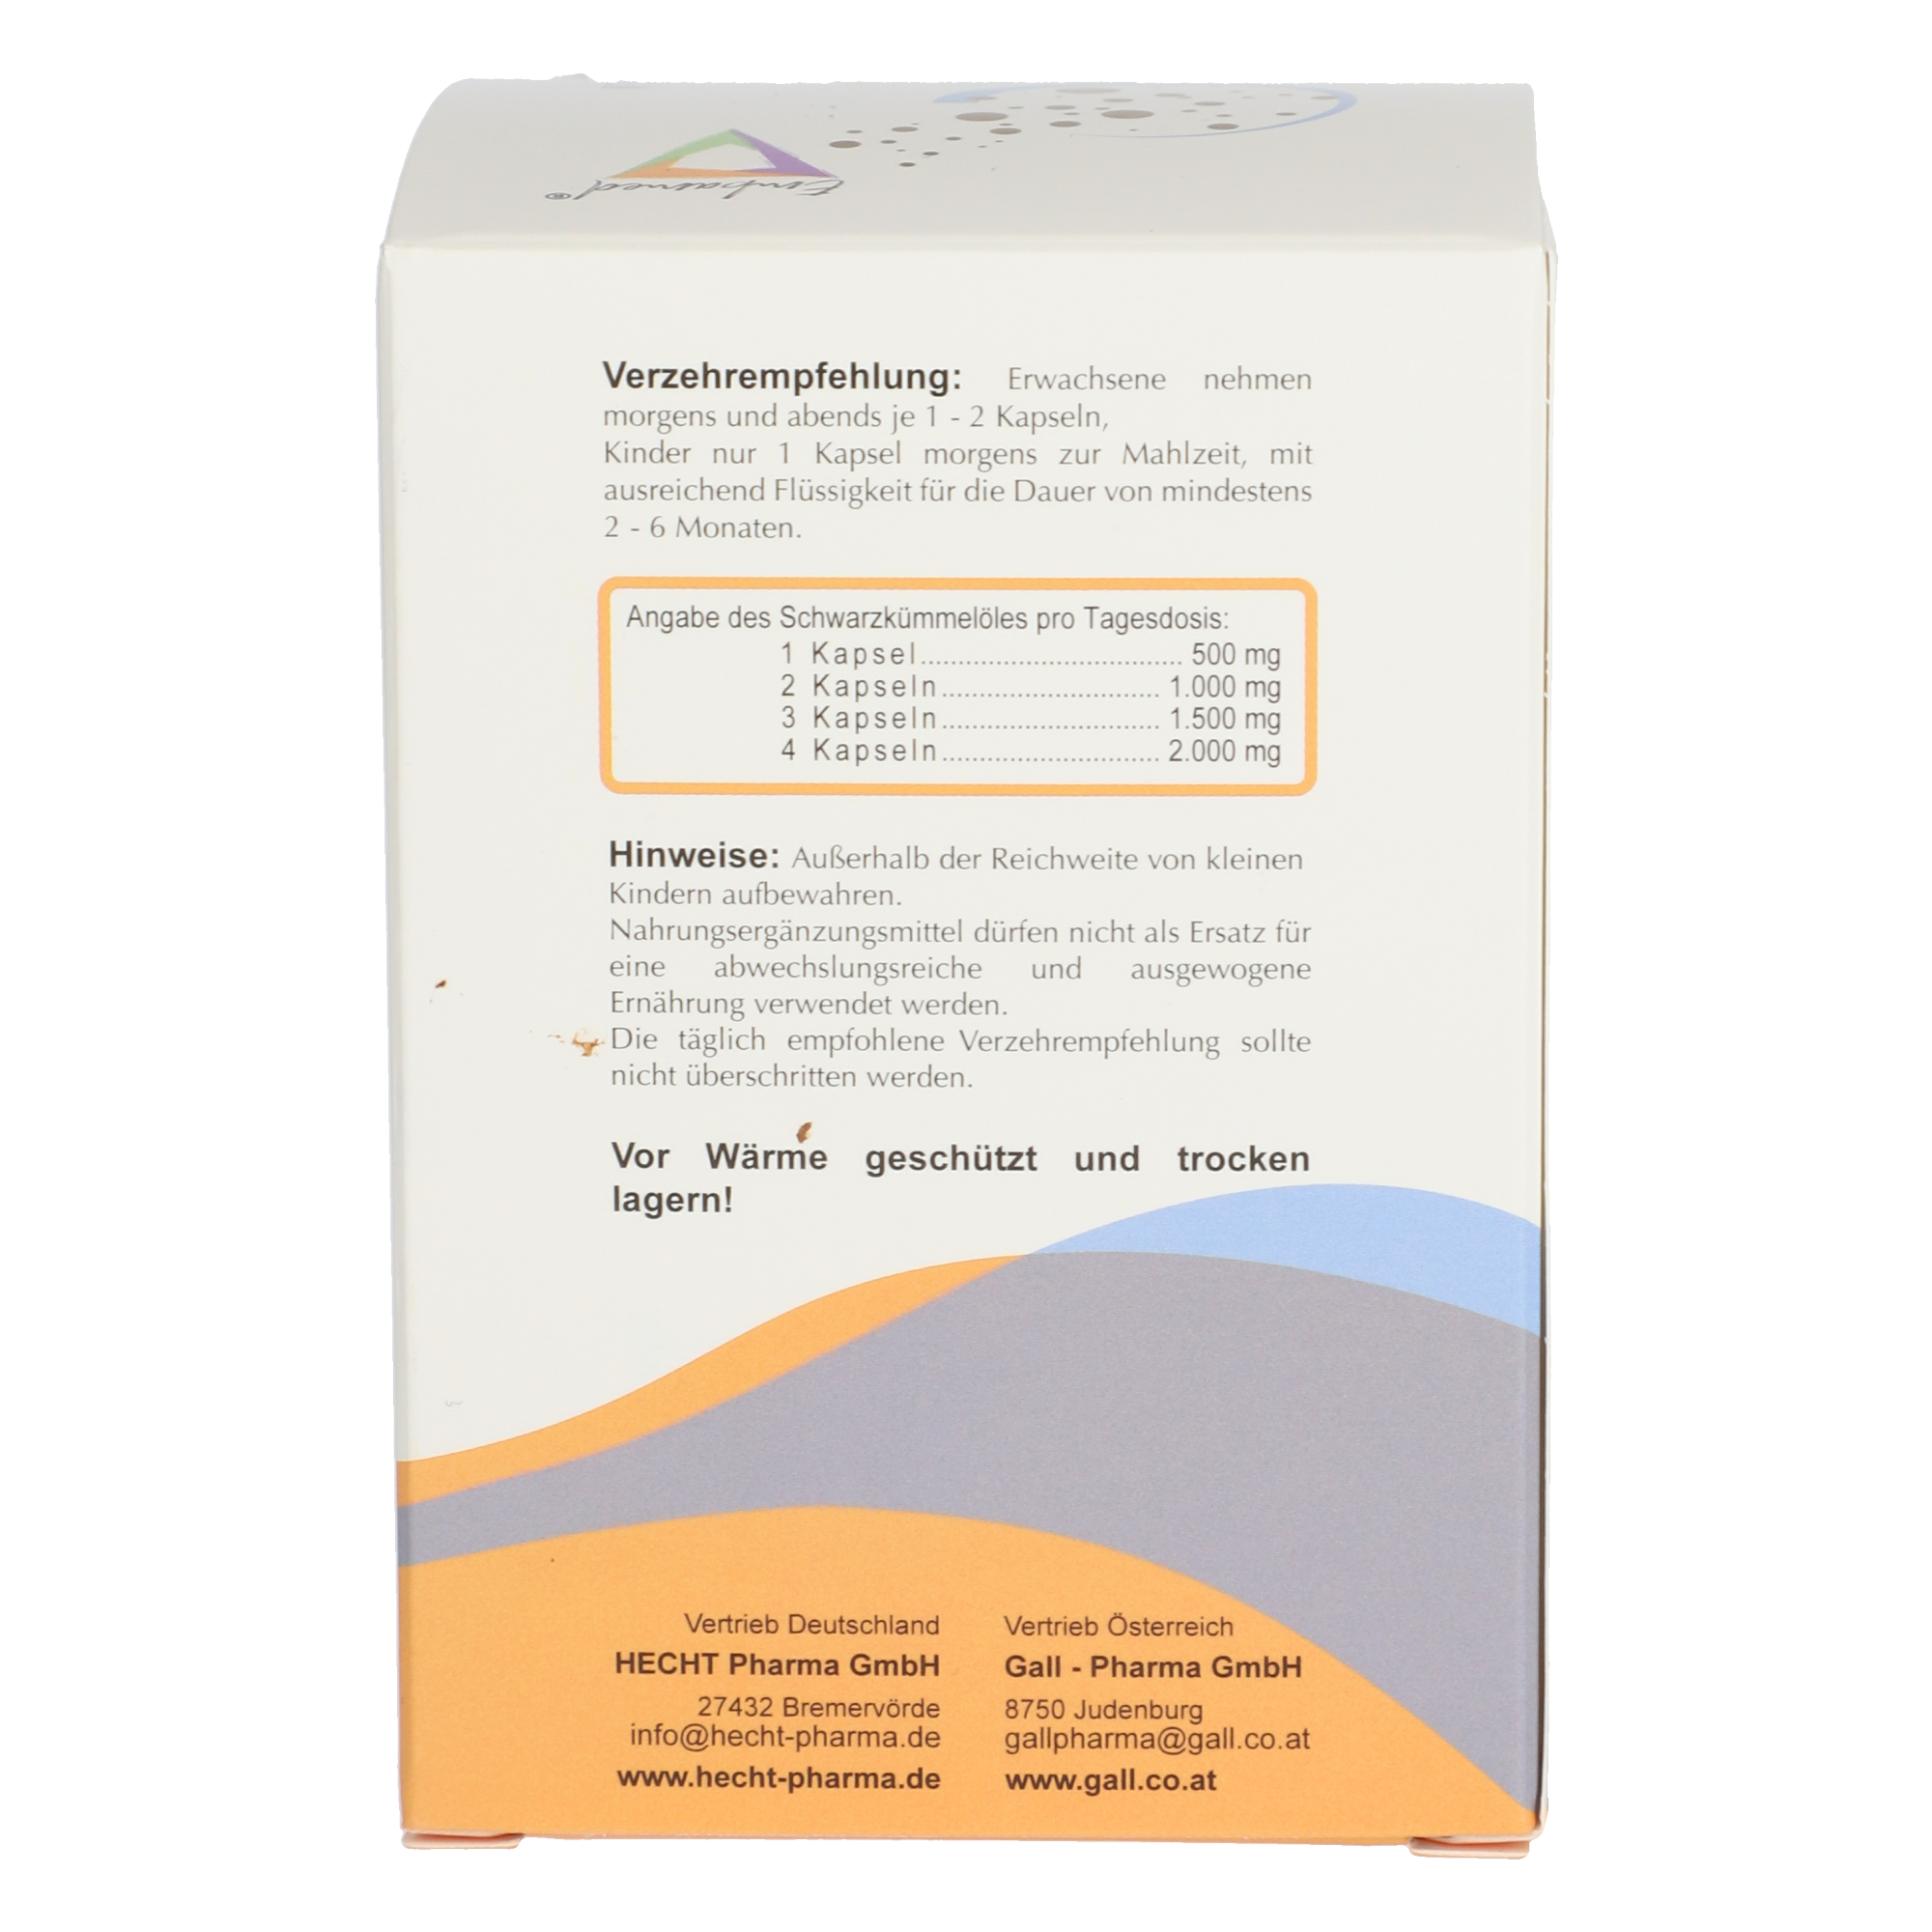 Schwarzkümmelöl Gall-Embamed 500 mg Kapseln